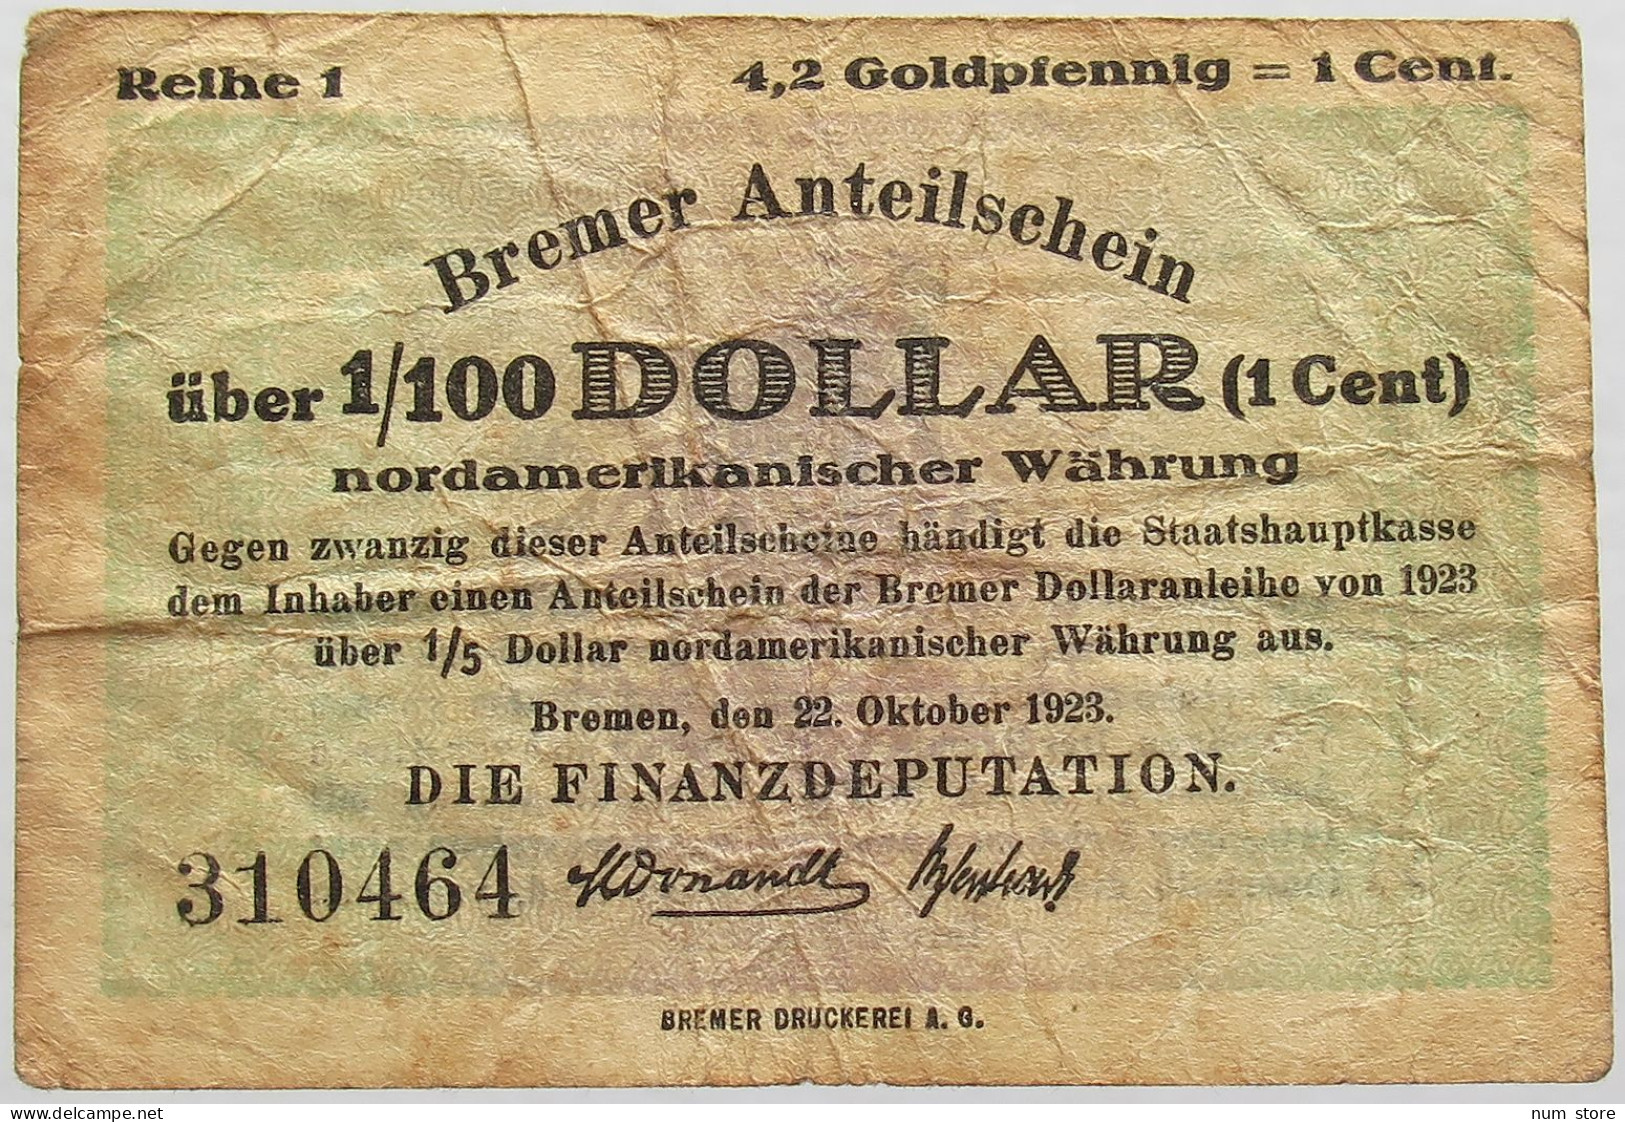 GERMANY 4.2 GOLDPFENNIG 1923 BREMEN #alb008 0205 - Deutsche Golddiskontbank